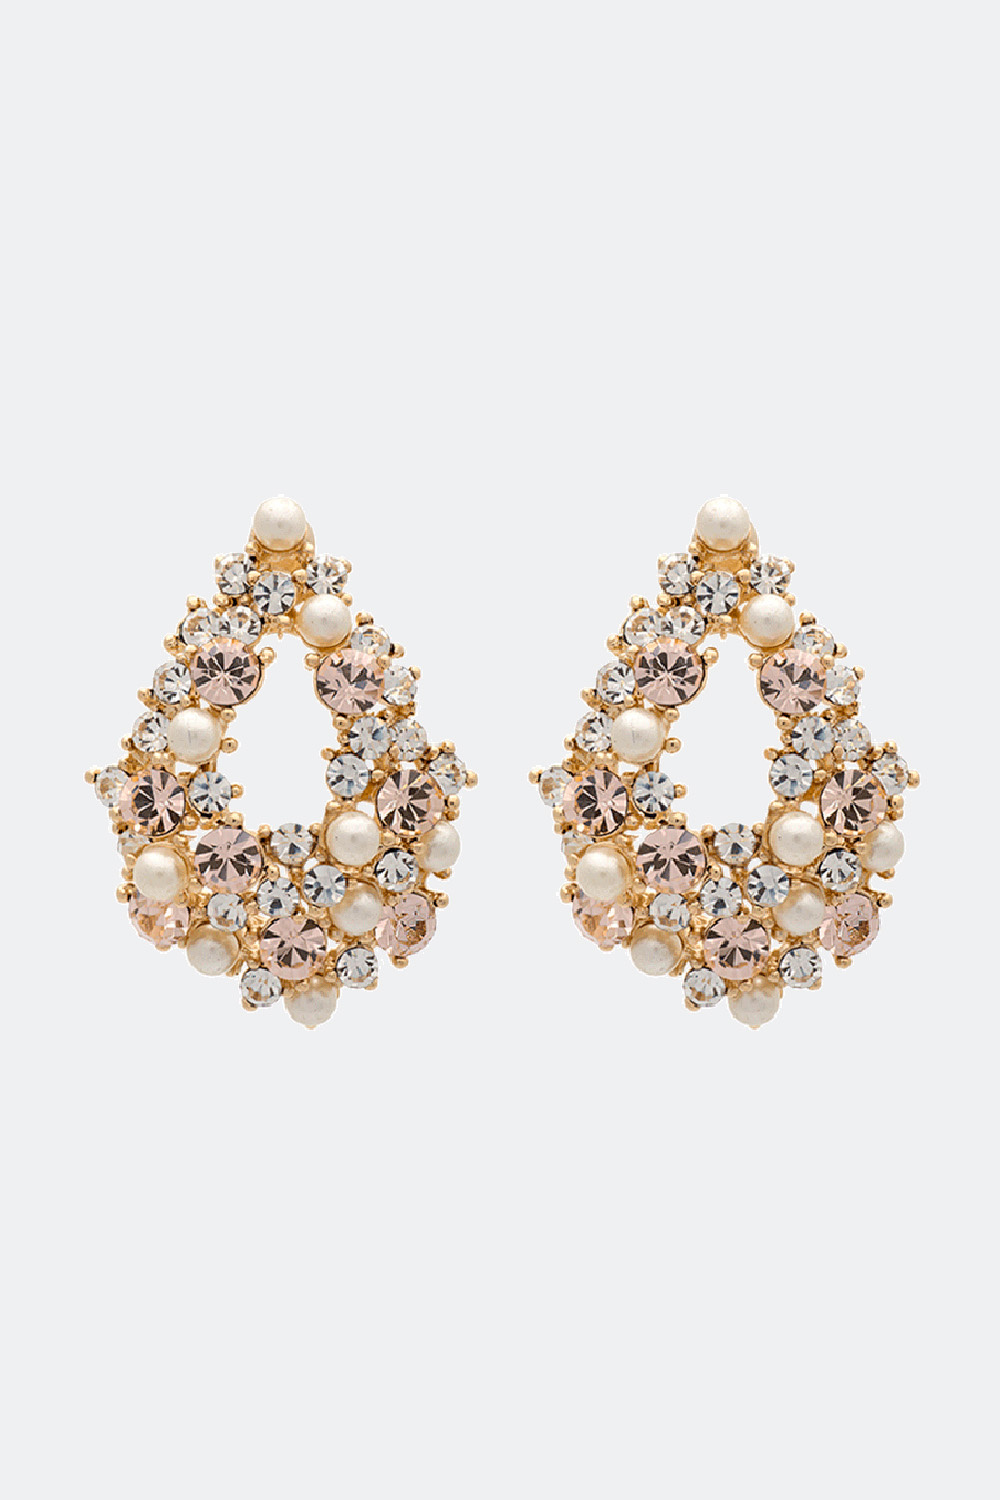 Alice pearl earrings - Ivory silk